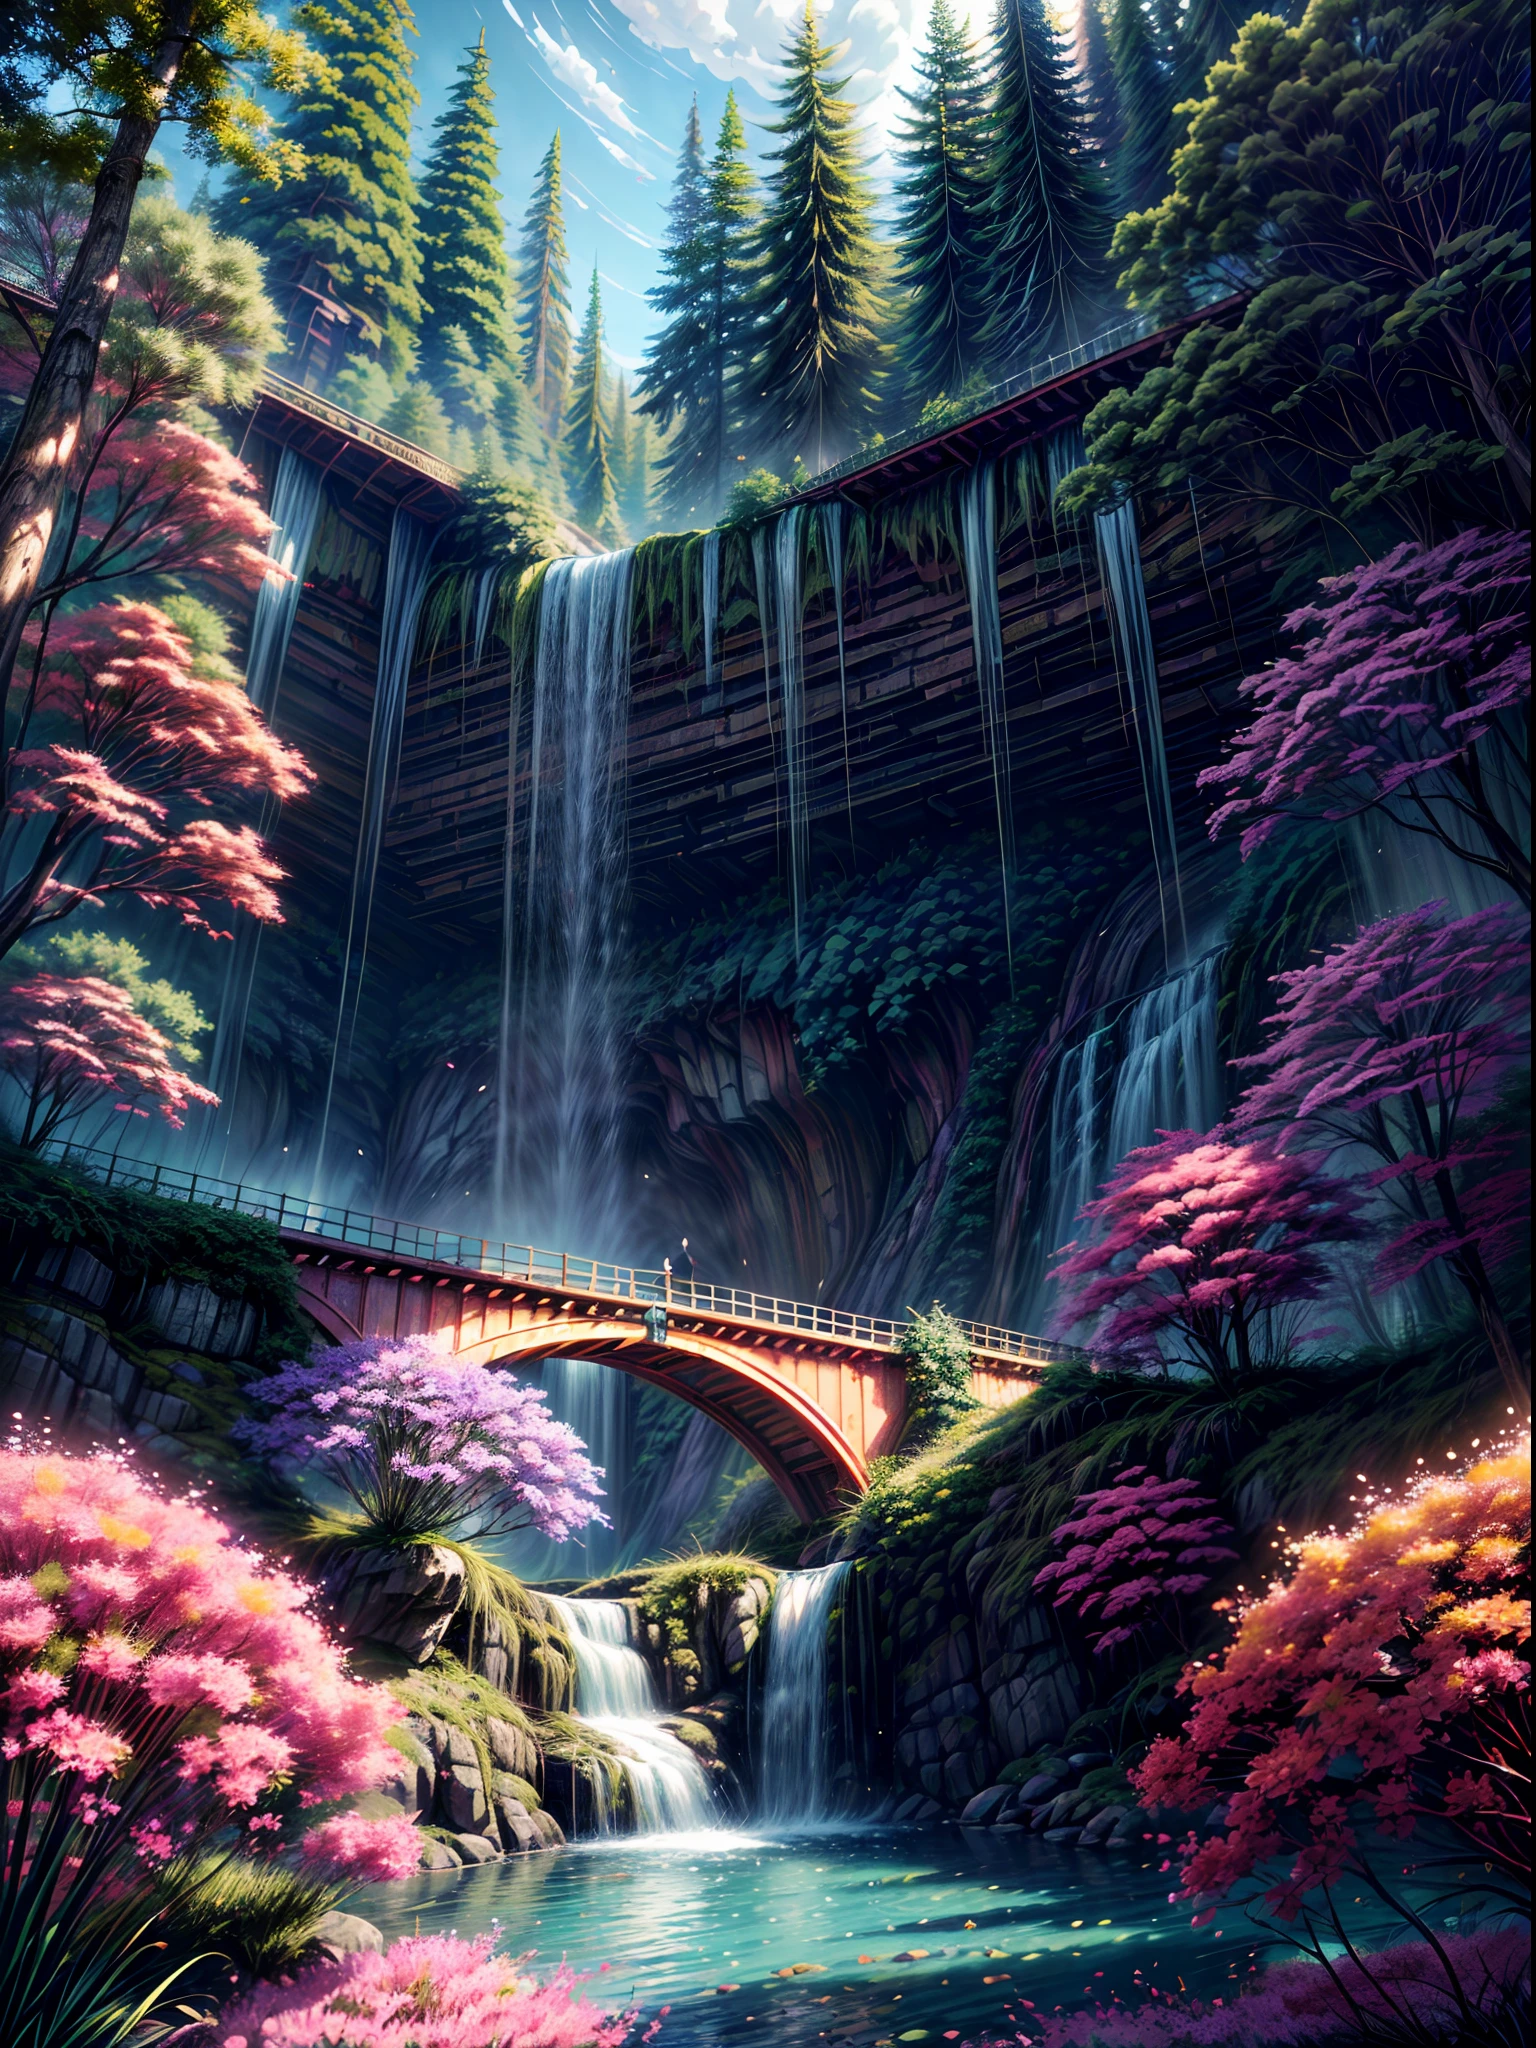 Une belle cascade biopunk dans la nature, coloré, fleurs, pins, un pont suspendu, punk, bip.